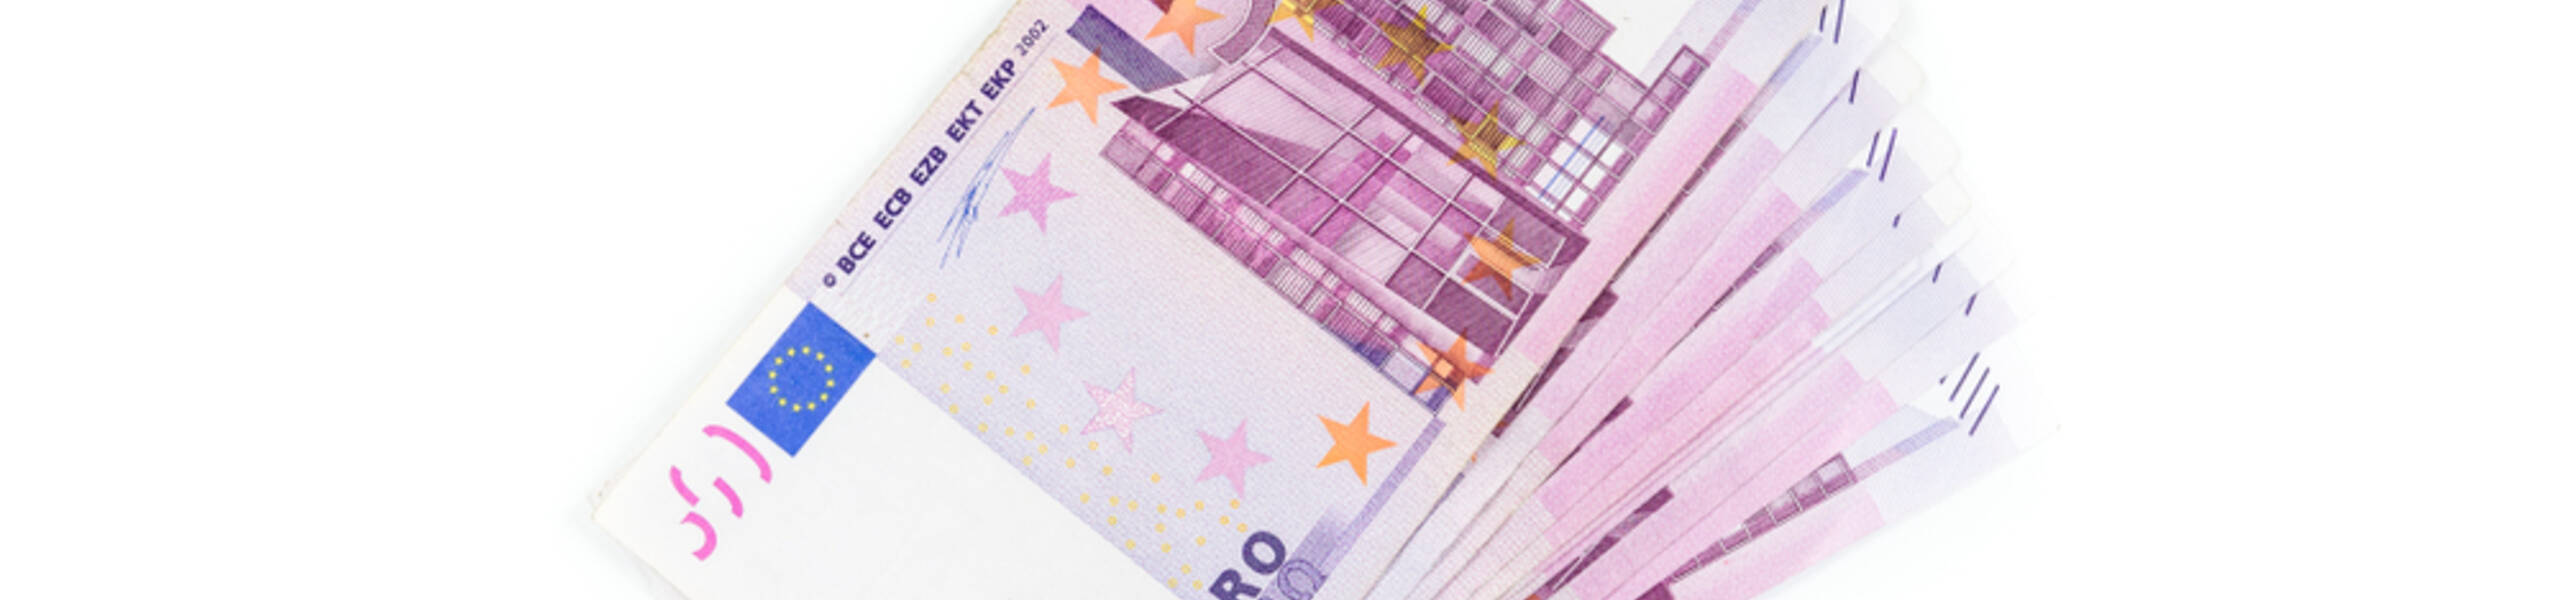 EUR / USD: Touros encorajados diante da fraqueza do dólar